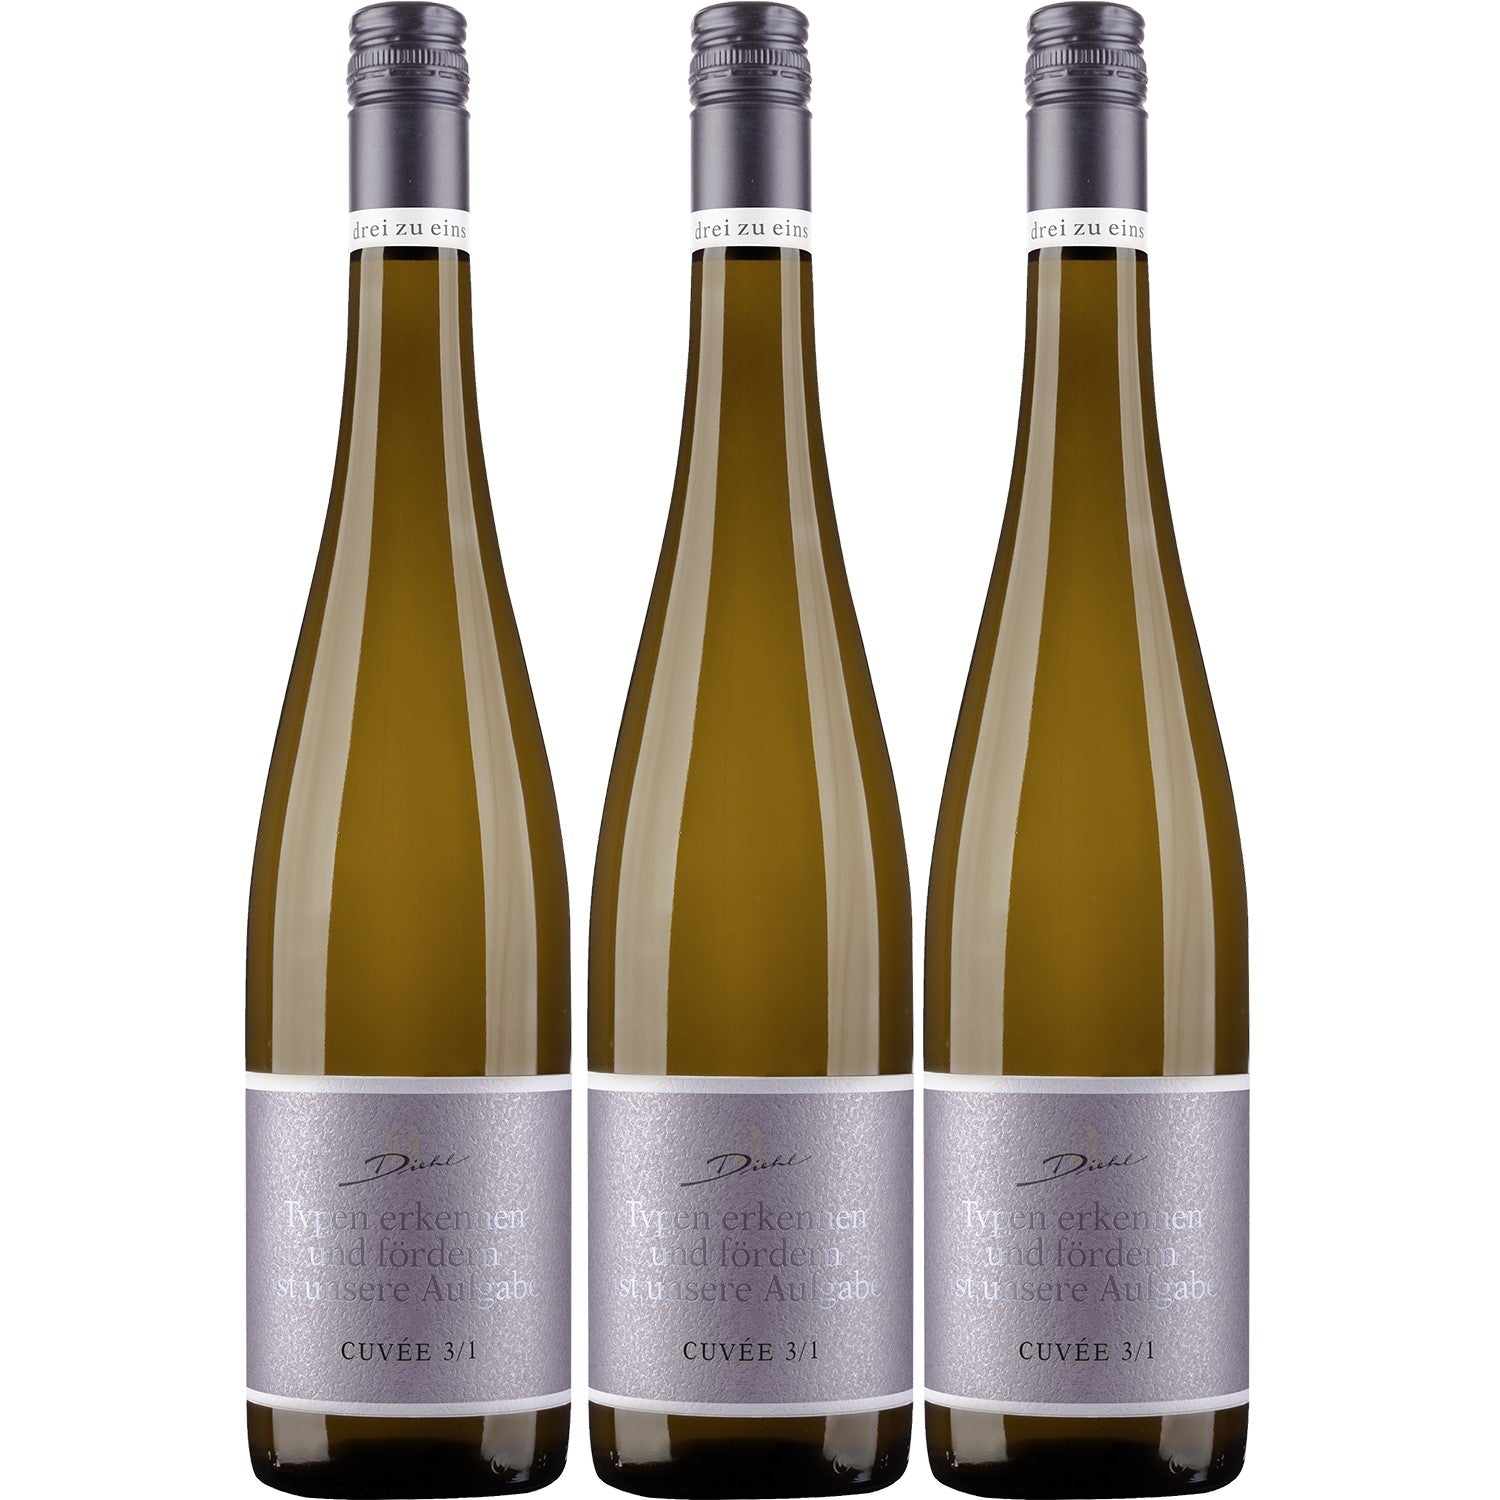 A. Diehl Aroma Cuvée drei zu eins Weißwein trocken veganer Wein QbA Deutschland (3 x 0.75l) - Versanel - Wein